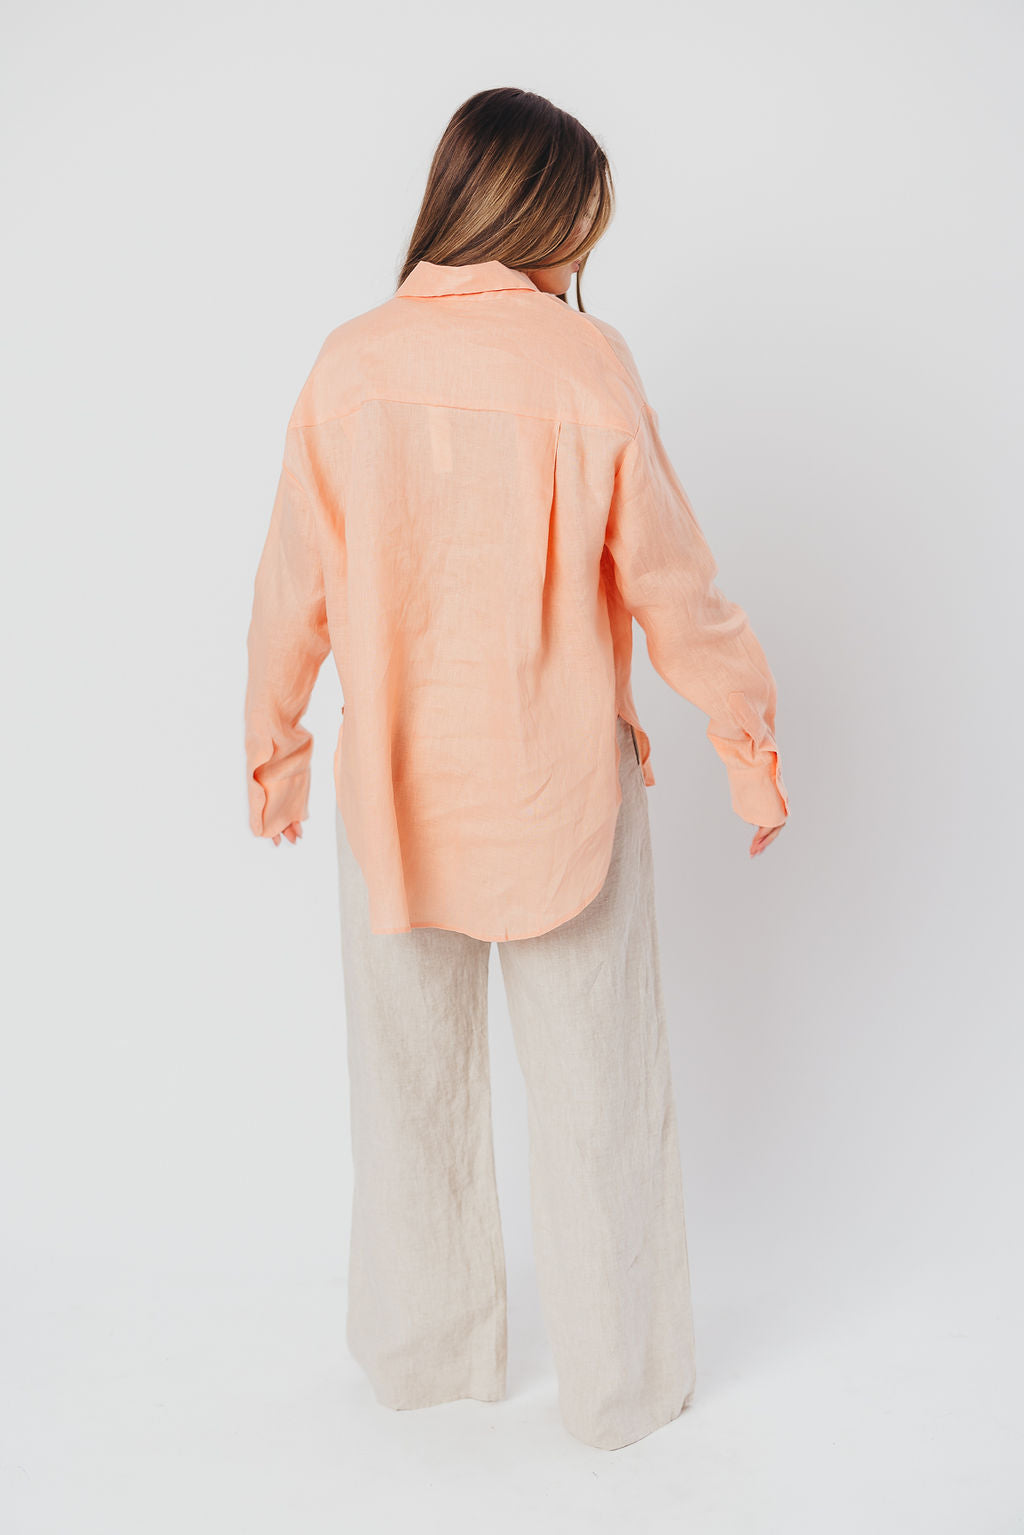 Helen 100% Linen Shirt in Peach - Nursing Friendly